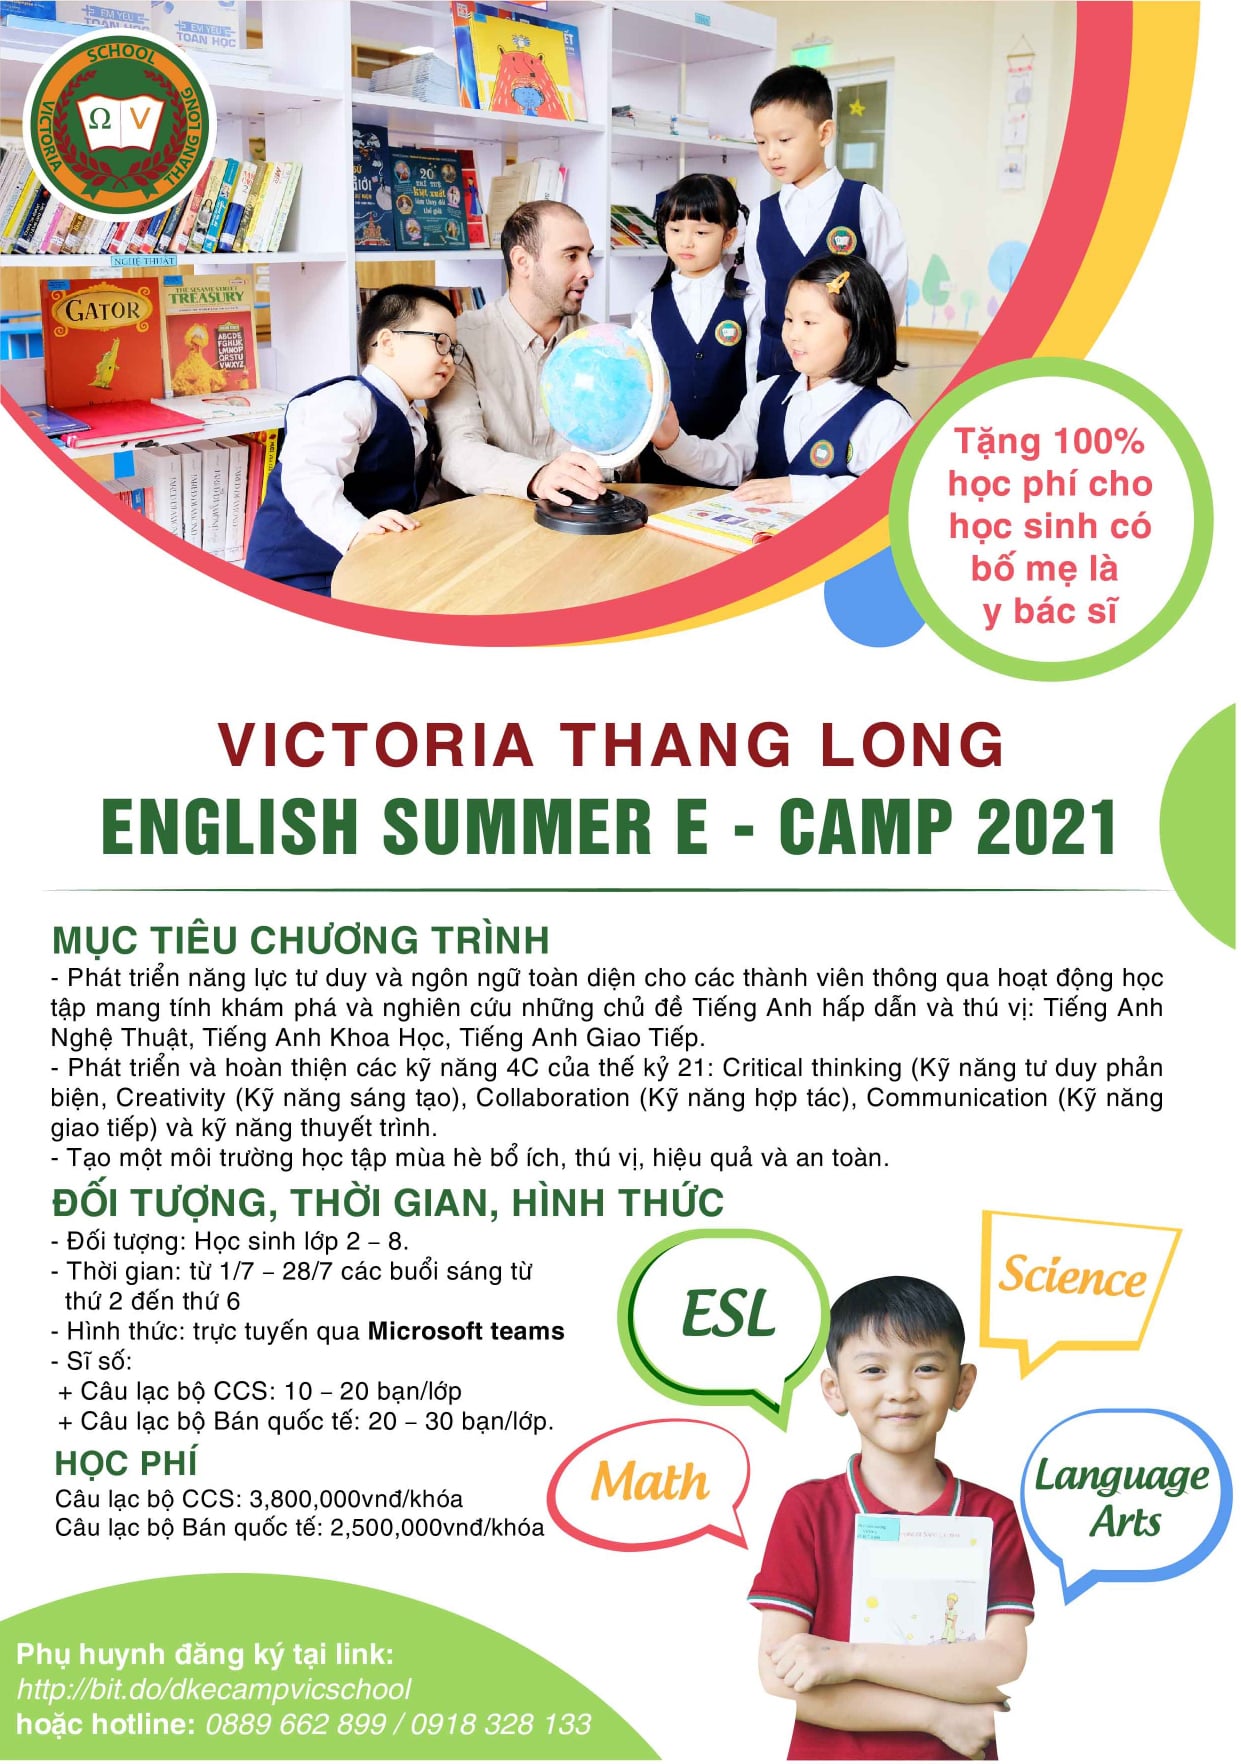 THÔNG TIN KHÓA TRẠI HÈ VICTORIA THANG LONG ENGLISH SUMMER E – CAMP 2021